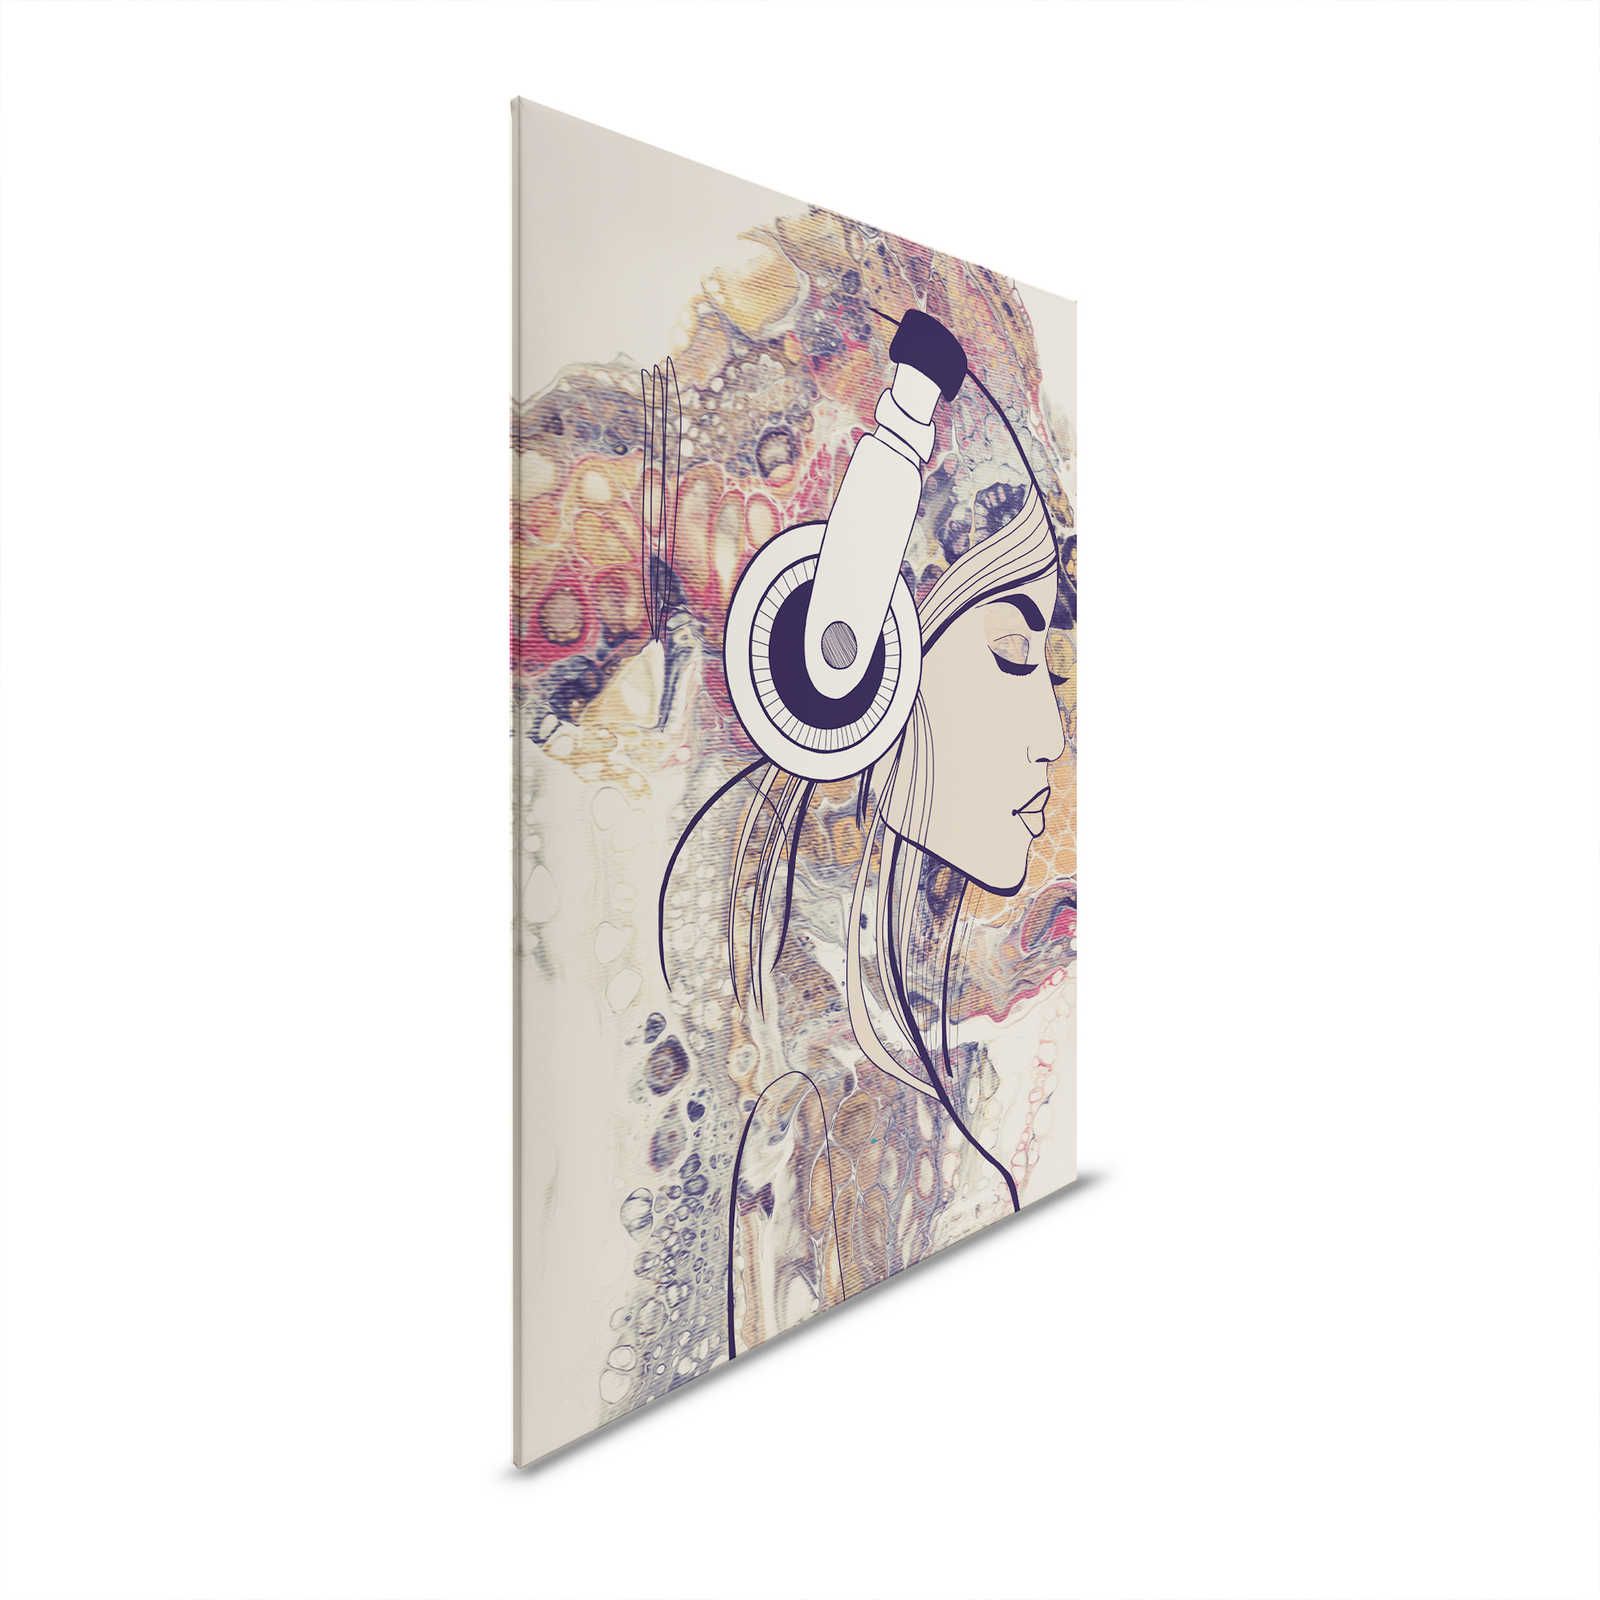         Leinwandbild Acryl & Line Art Frauenfigur mit Kopfhörern – 0,90 m x 0,60 m
    